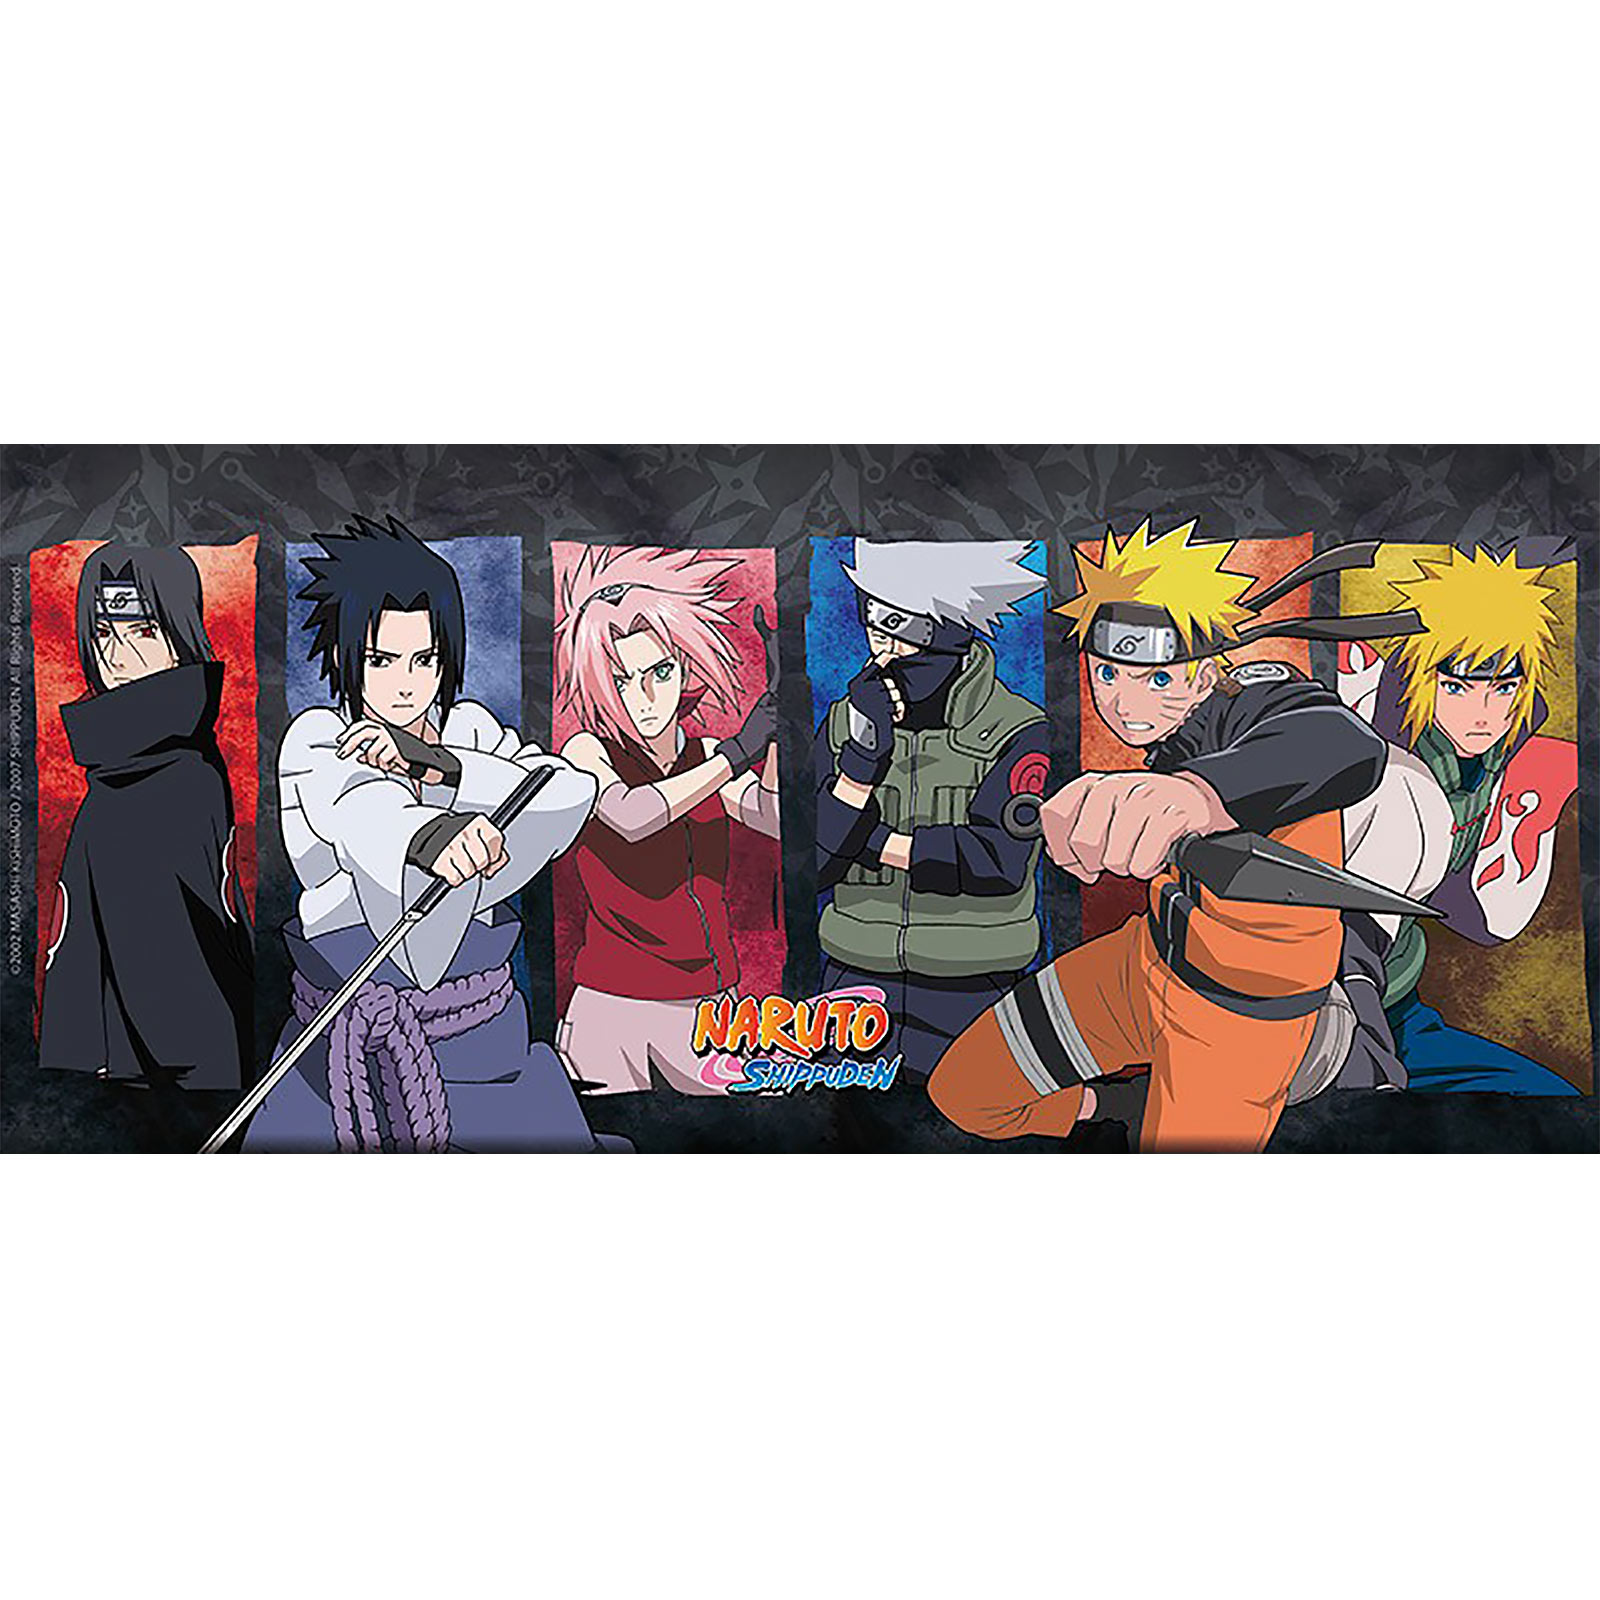 Naruto - Konoha Ninjas Tasse